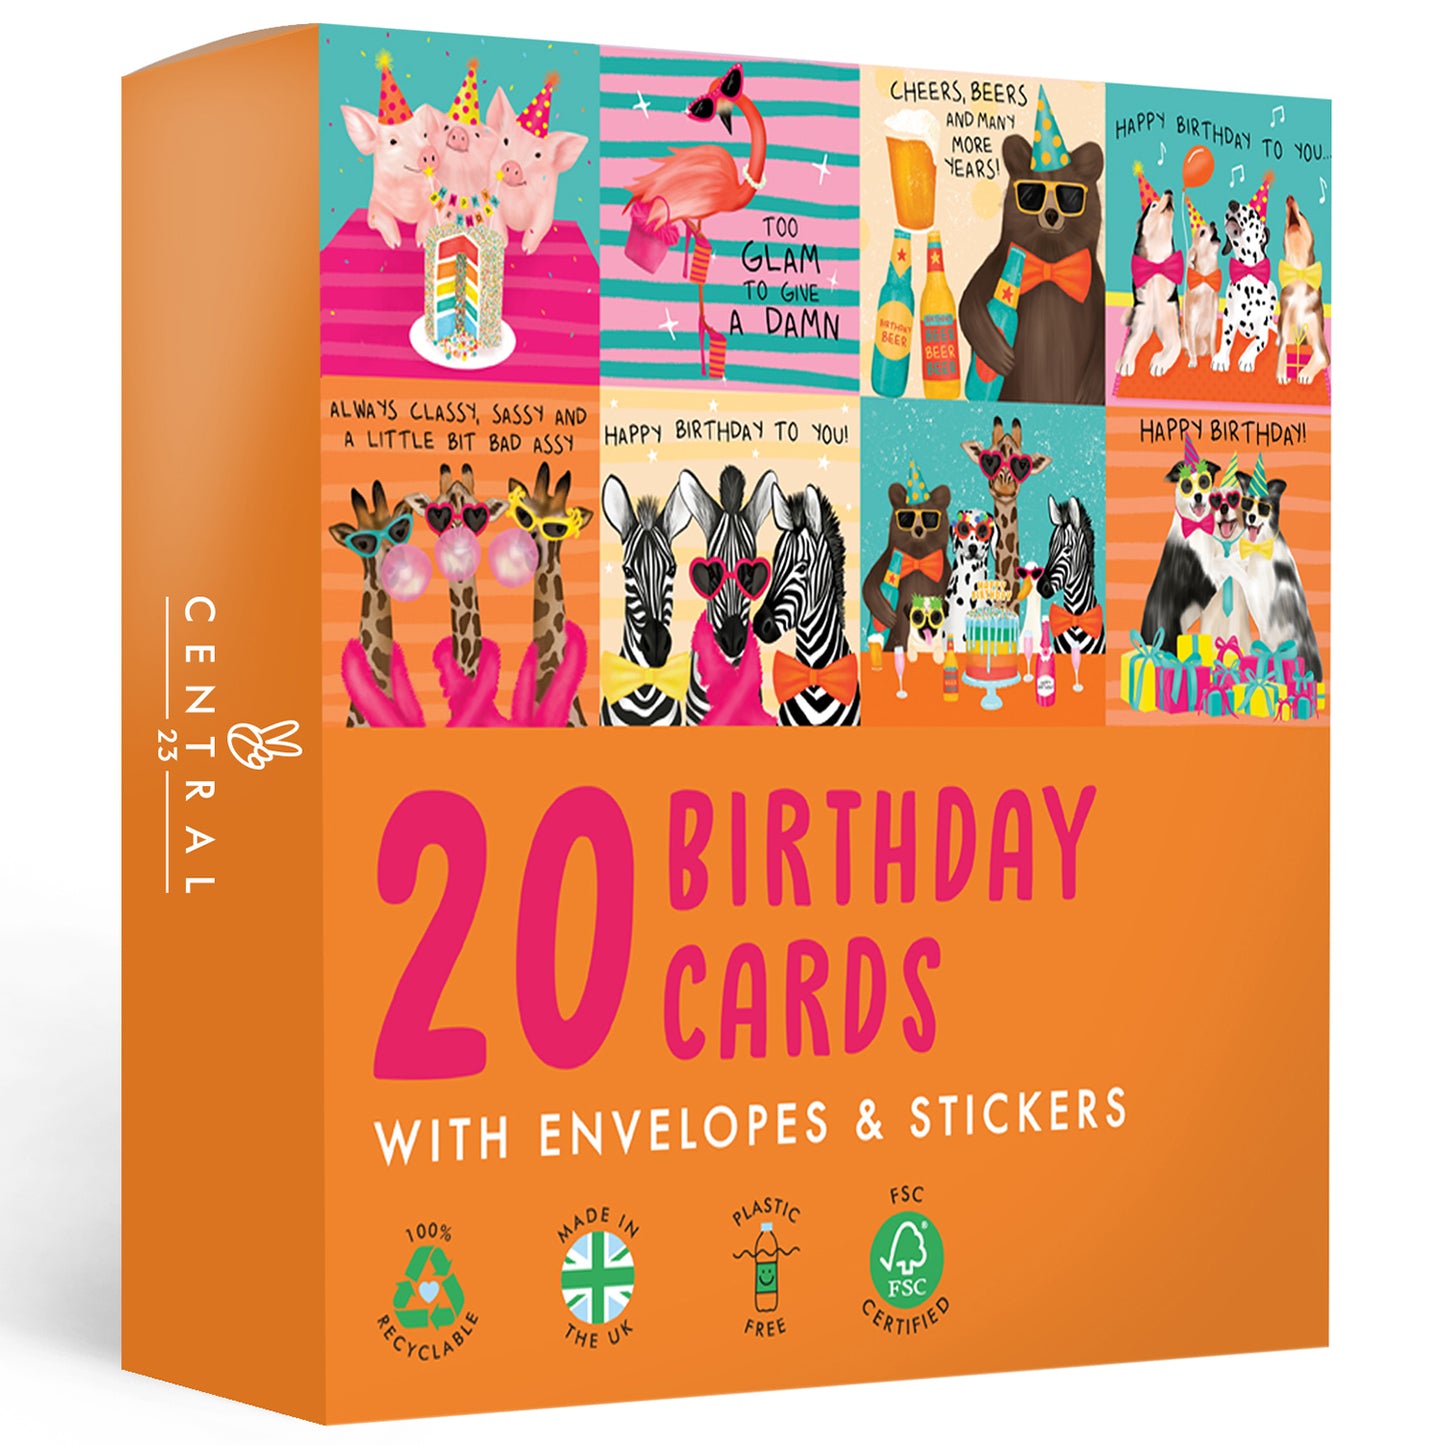 Funny Animal Birthday Cards Multipack - 20 Pack Assortment - For Men Women Boys Girls Him Her